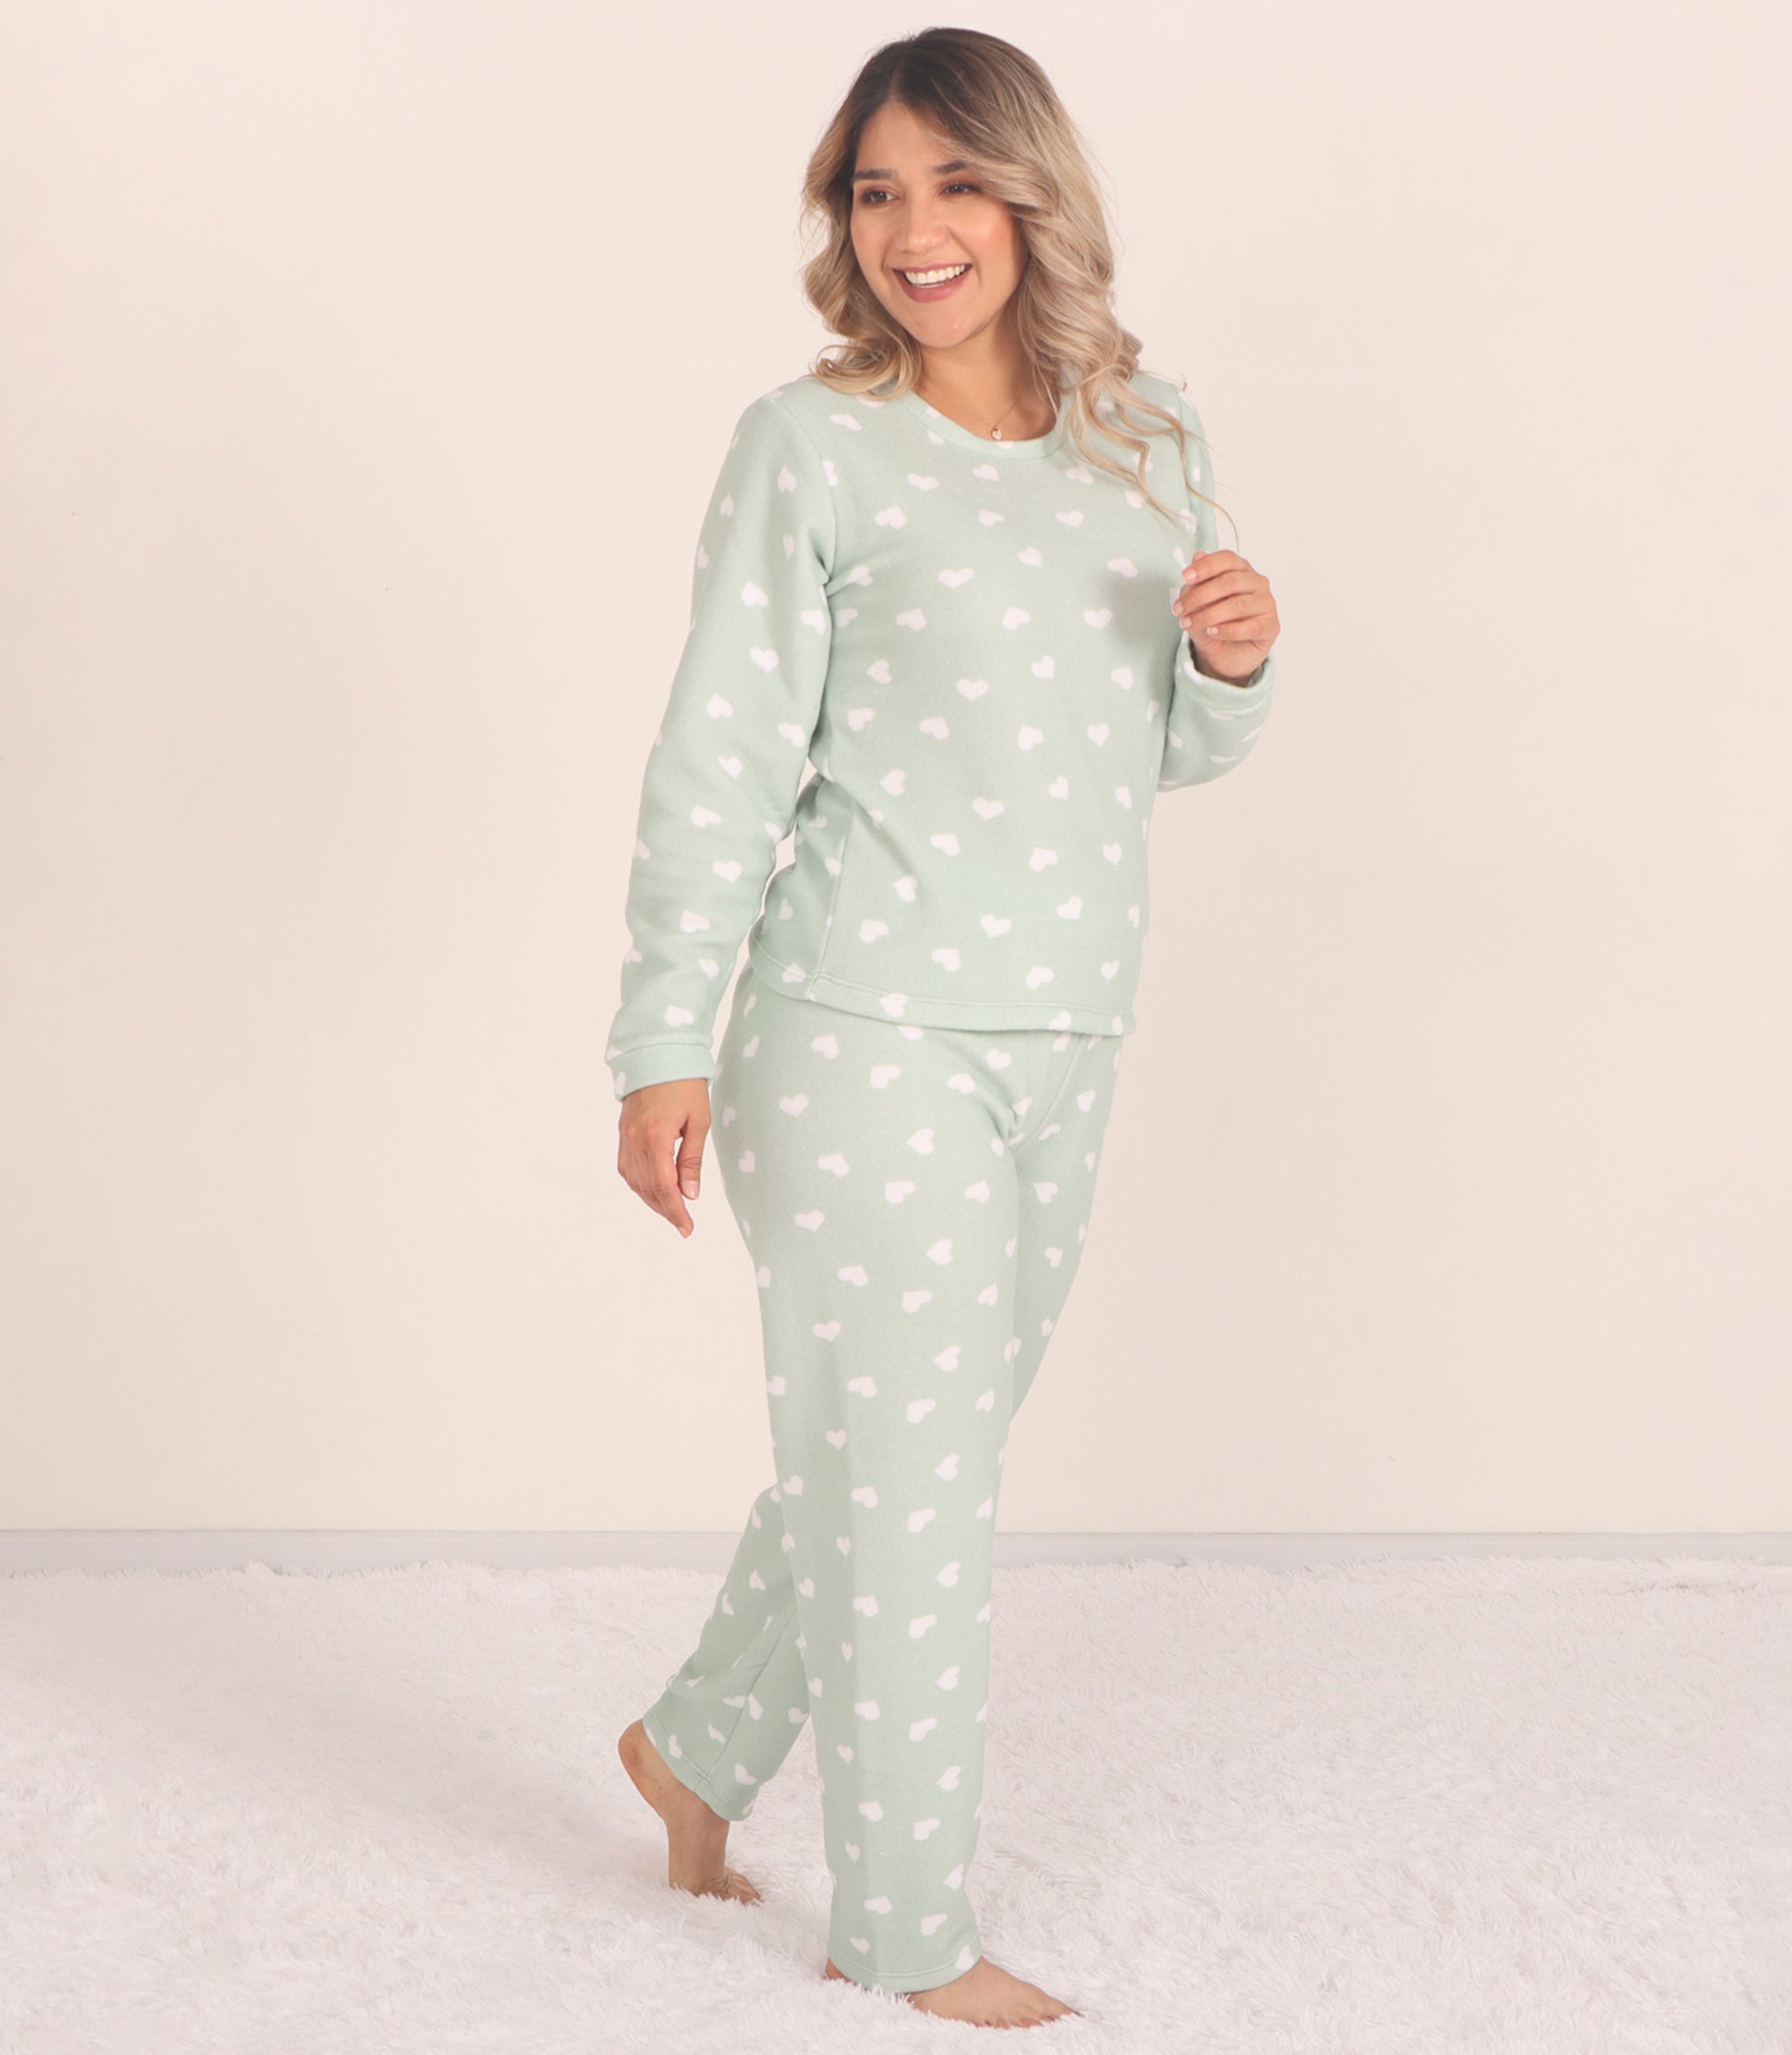 Pijama térmica para mujer - Pantalón largo pijama mujer - Yeti